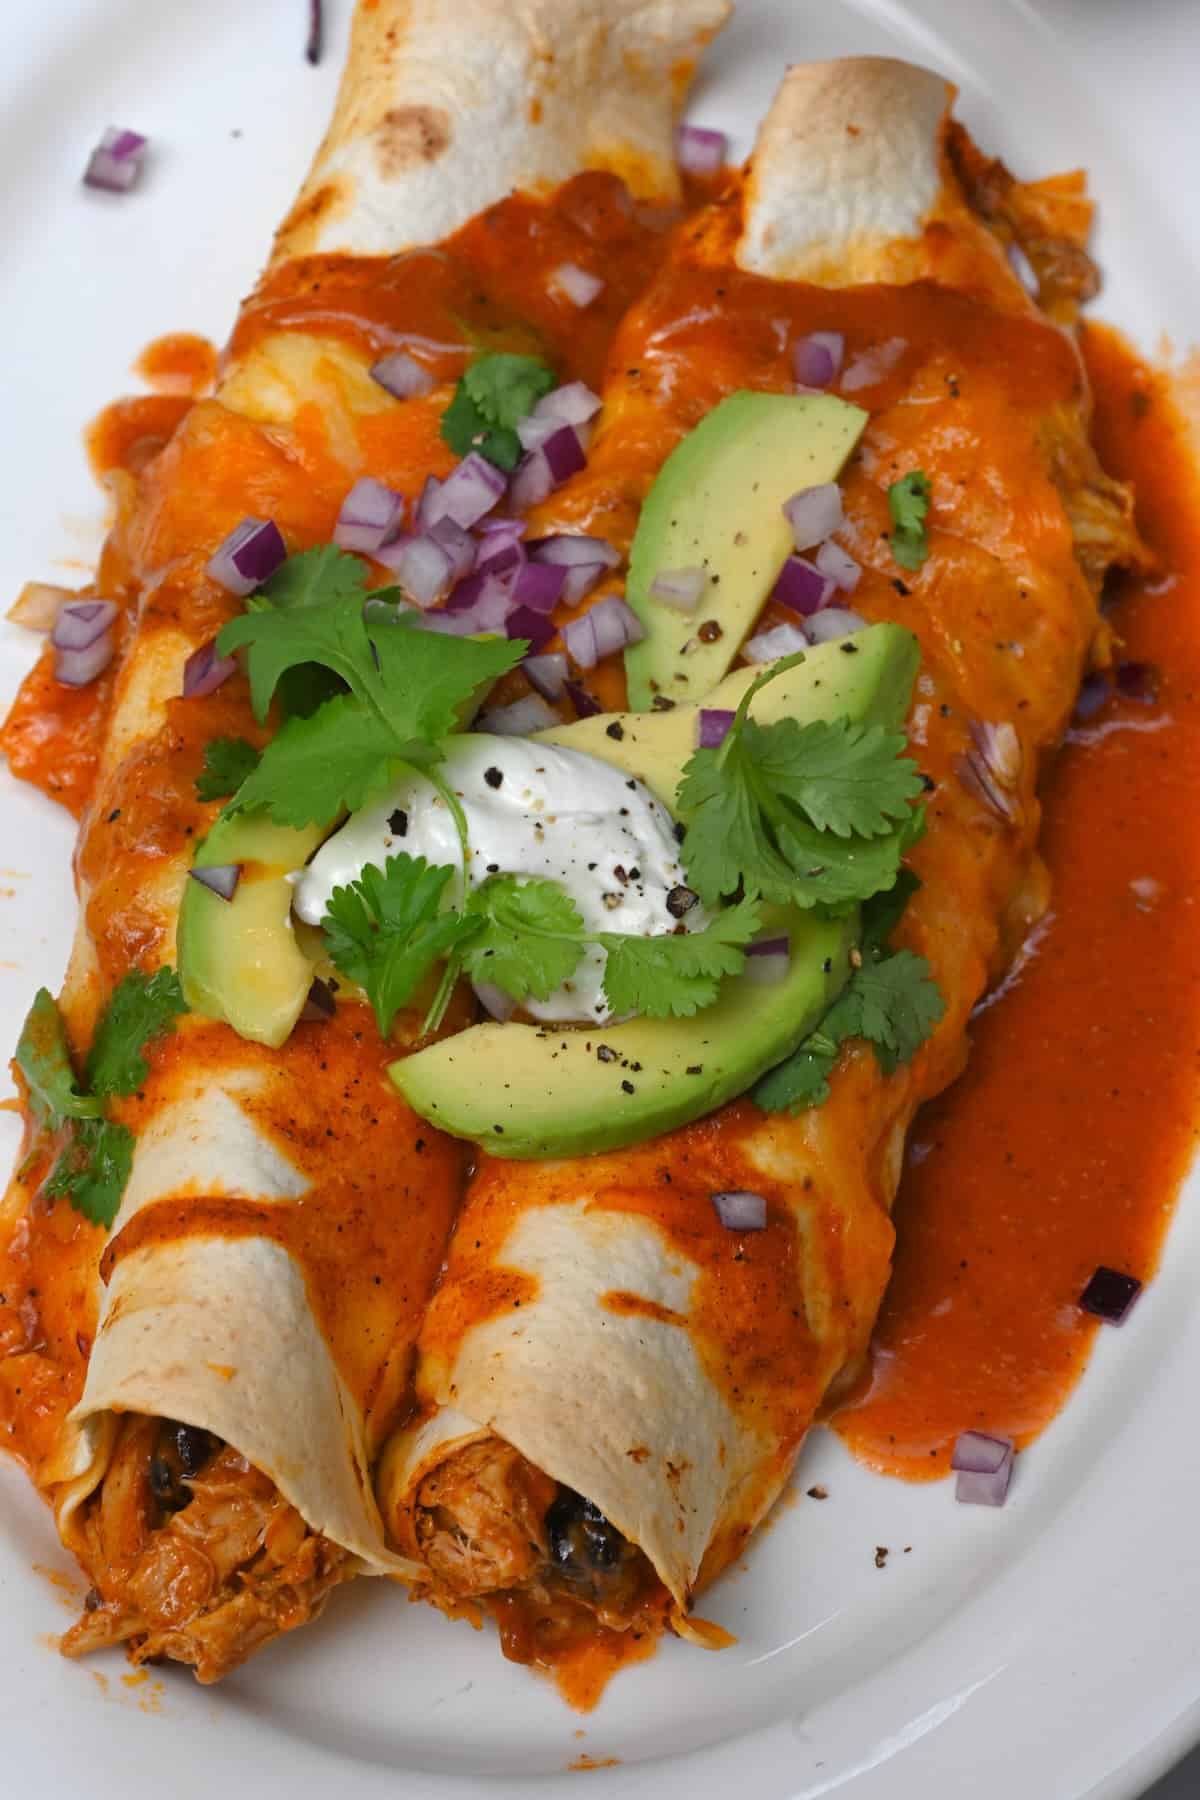 Enchiladas made with homemade enchilada sauce